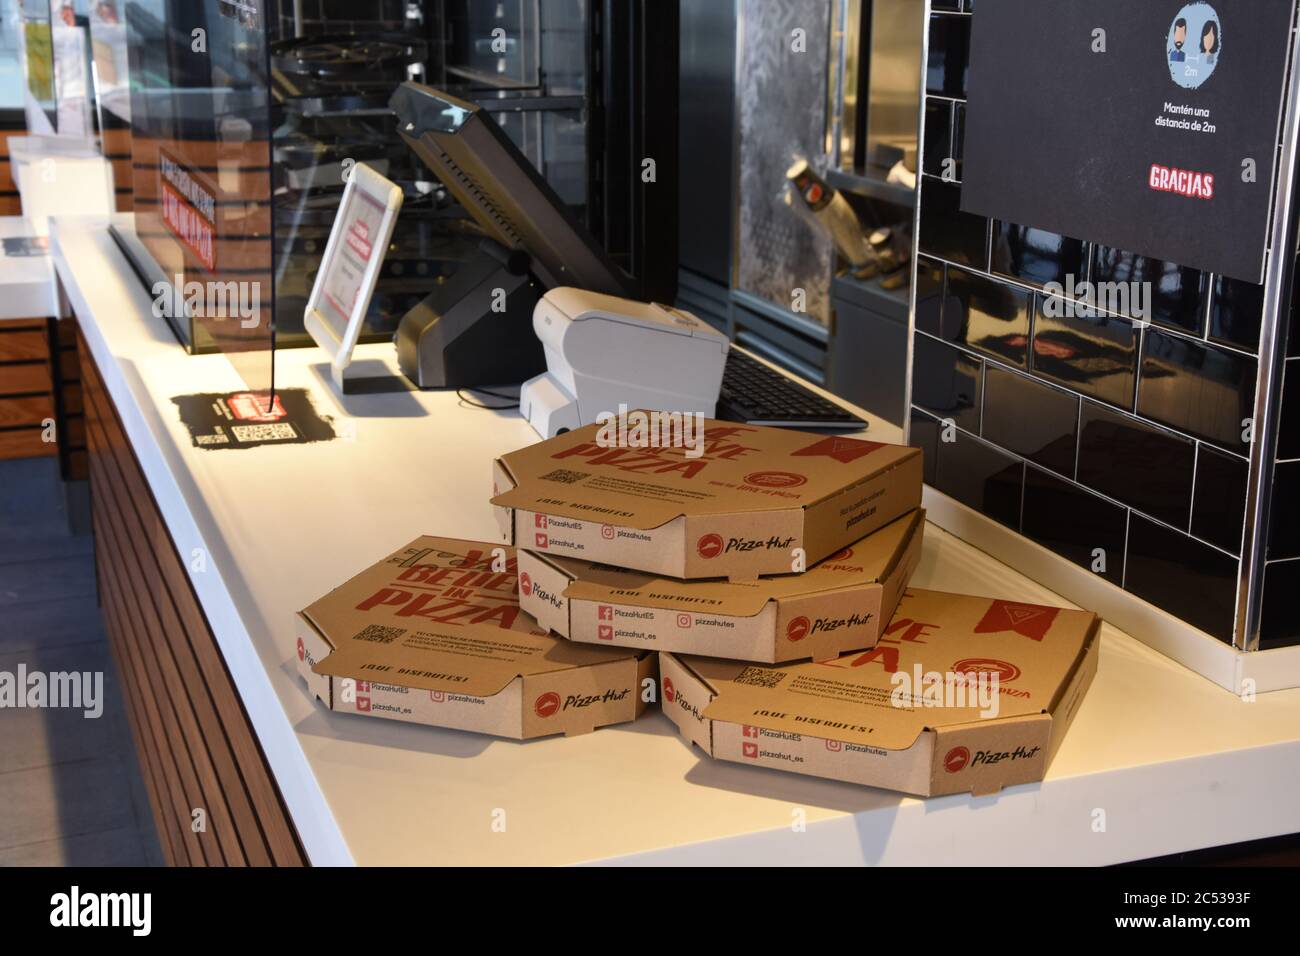 Pizza Hut takeaway boxes Stock Photo